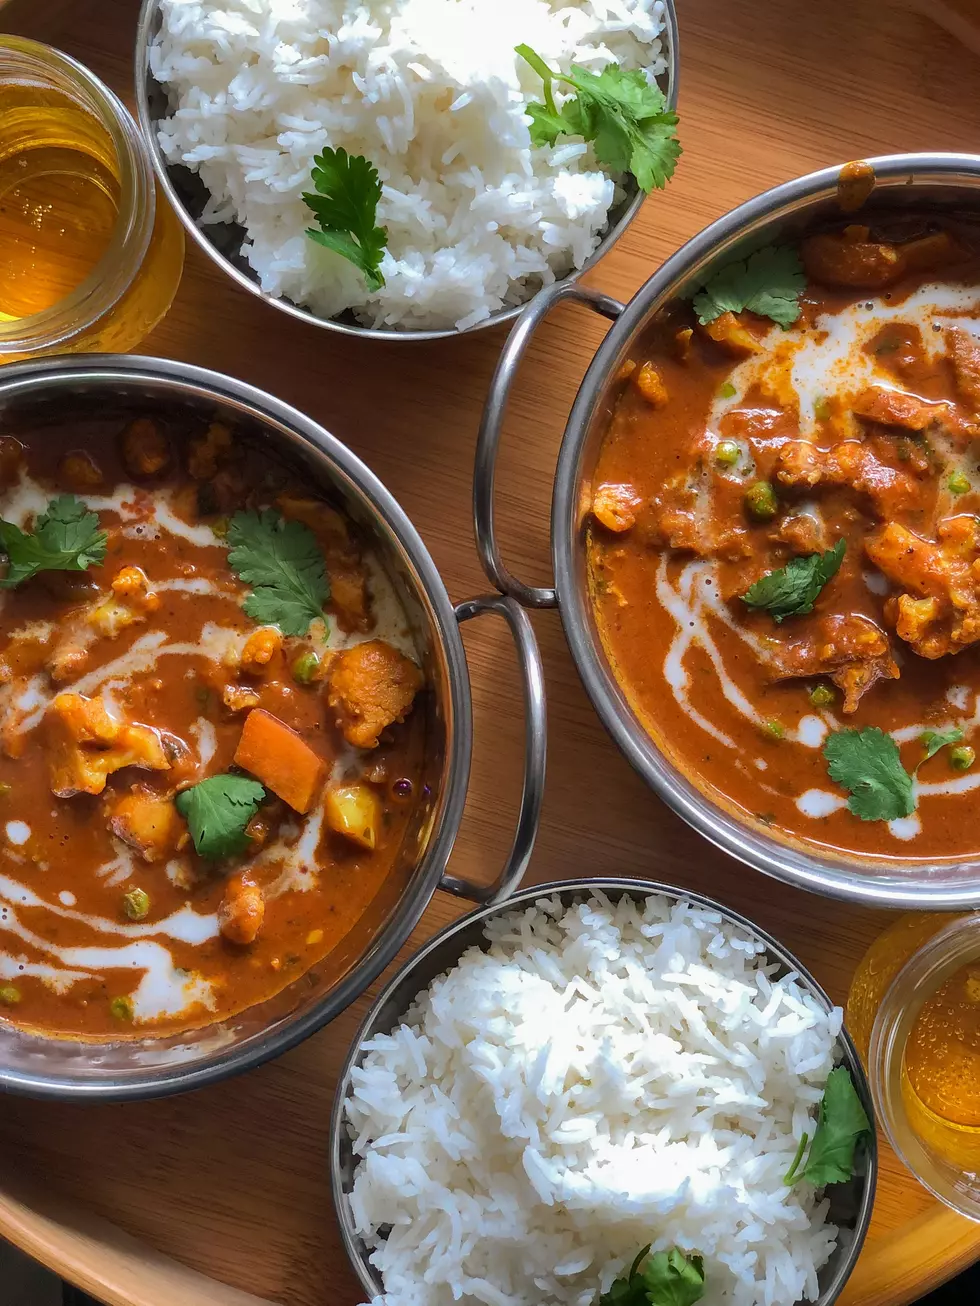 Kalamazoo's Favorite Spots For Fantastic Indian Food